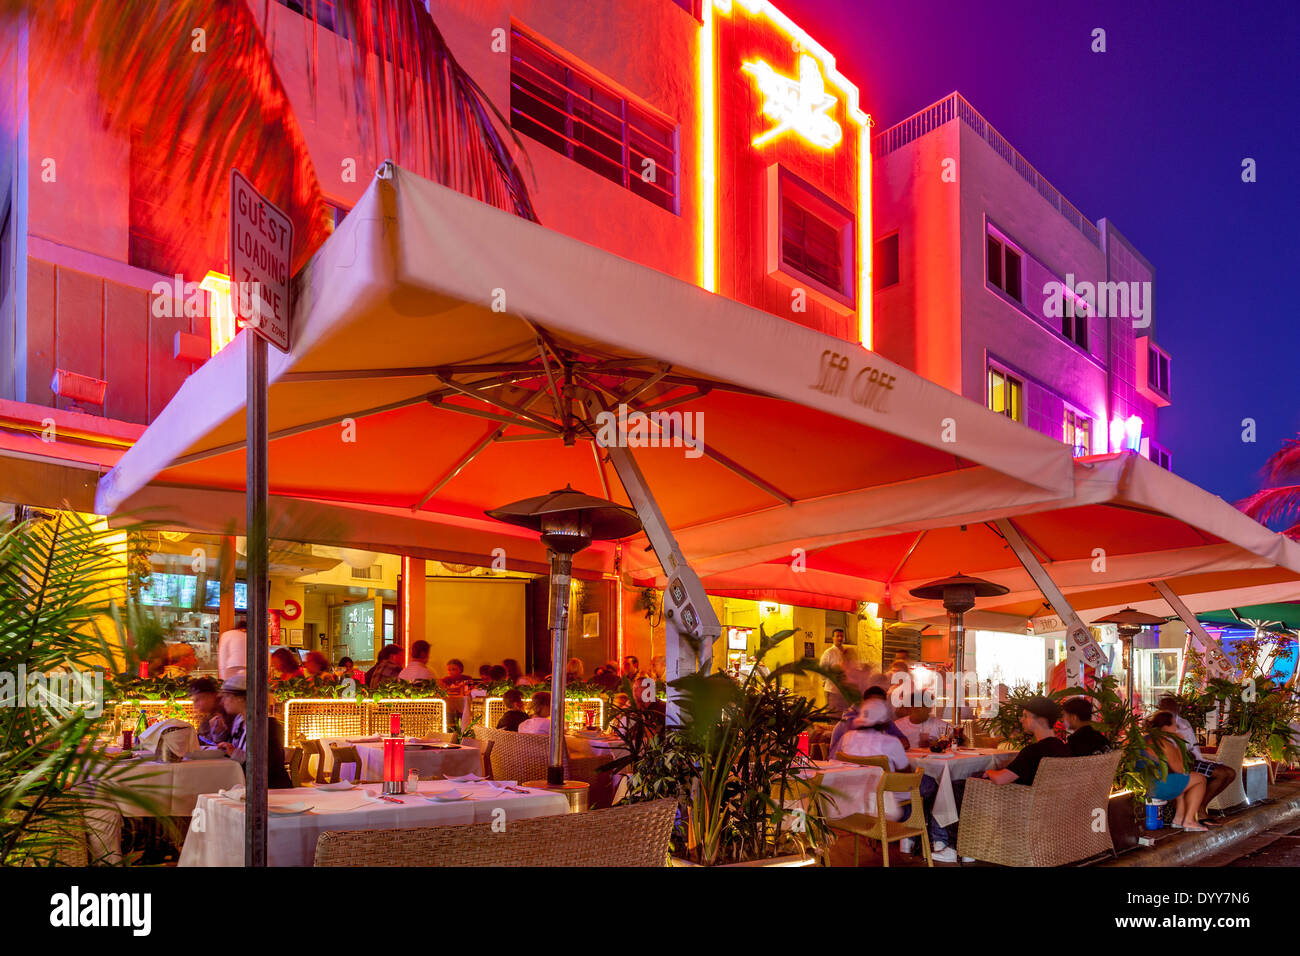 The Sea Cafe, Ocean Drive, South Beach, Miami, Florida, USA Stock Photo